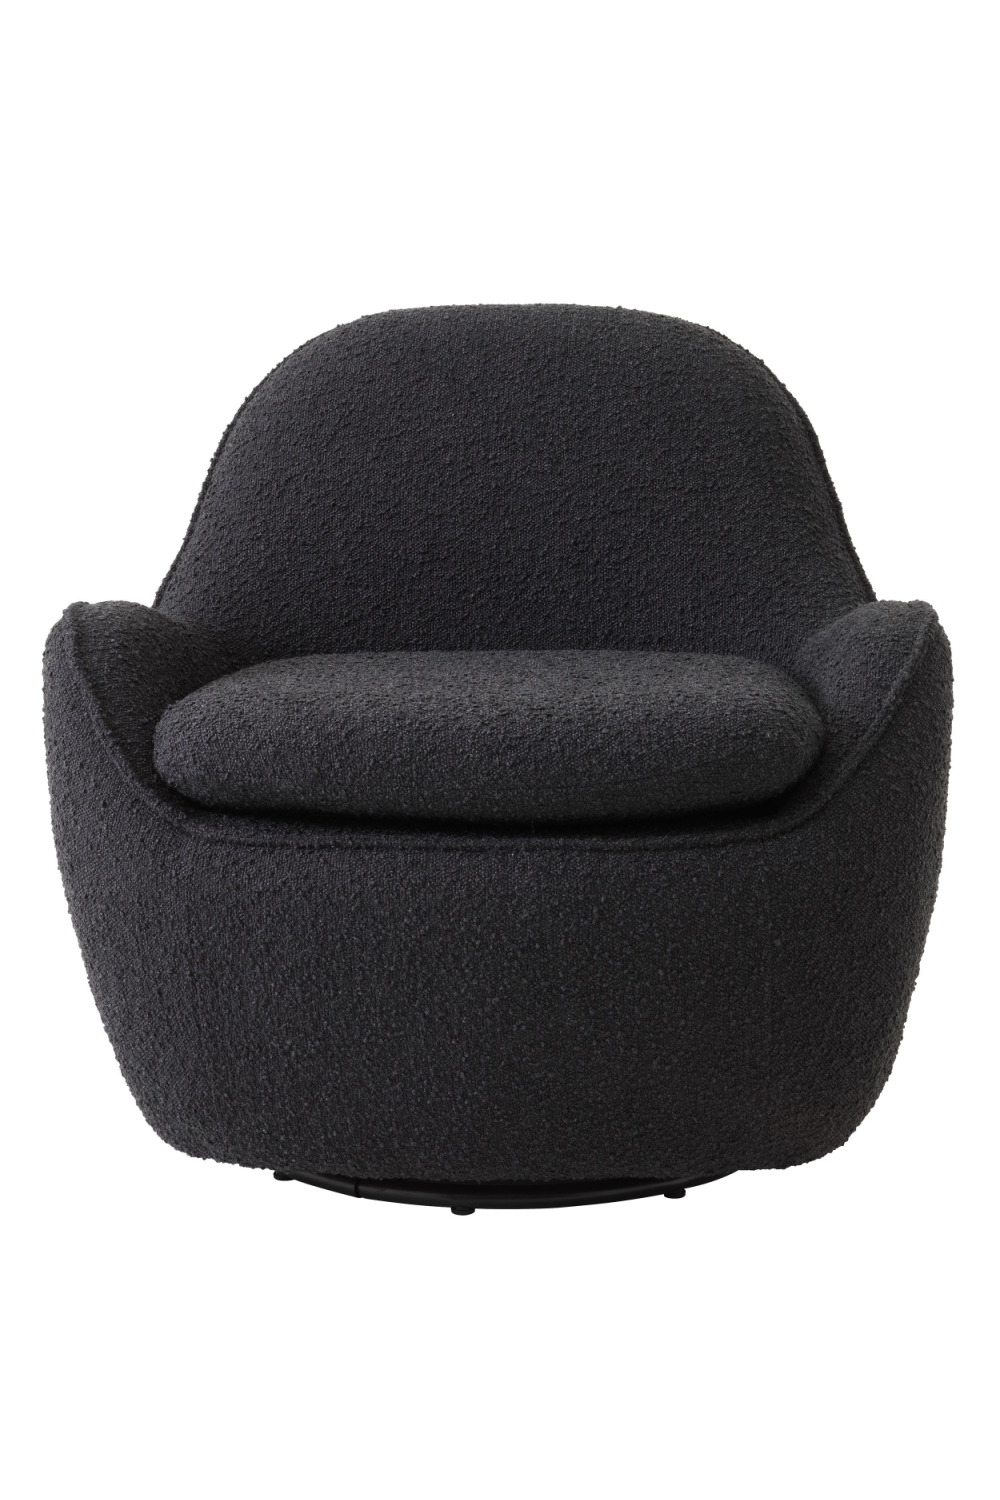 Black Bouclé Swivel Accent Chair | Eichholtz Cupido | Oroa.com